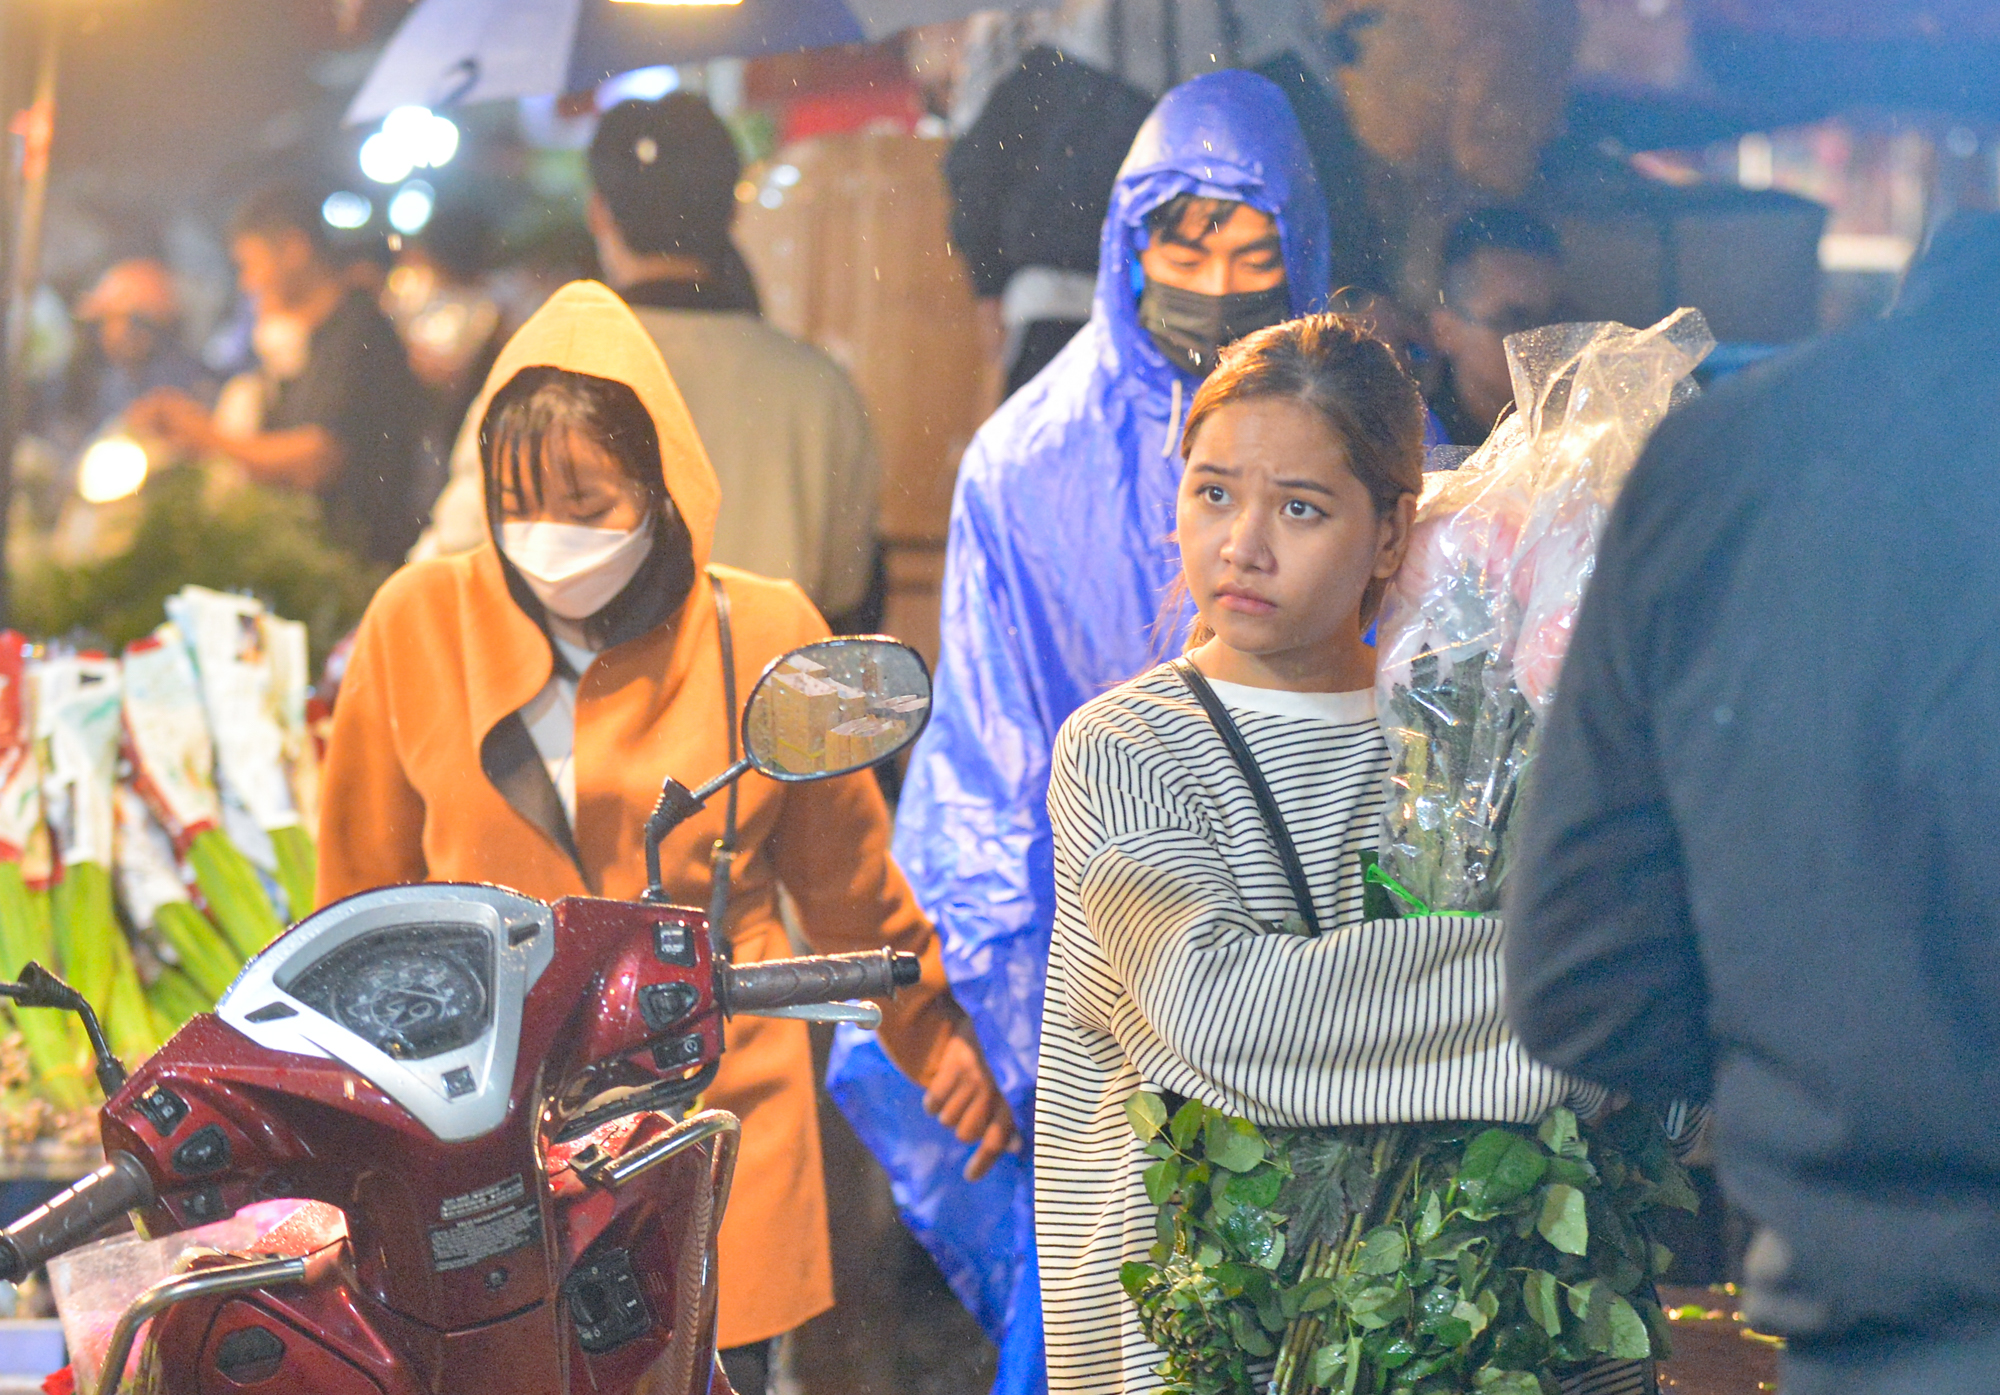 Ảnh: Mặc áo mưa, đội ô đi chợ hoa đêm lớn nhất miền Bắc trước ngày Phụ nữ Việt Nam 20/10, nhiều người co ro vì lạnh - Ảnh 10.